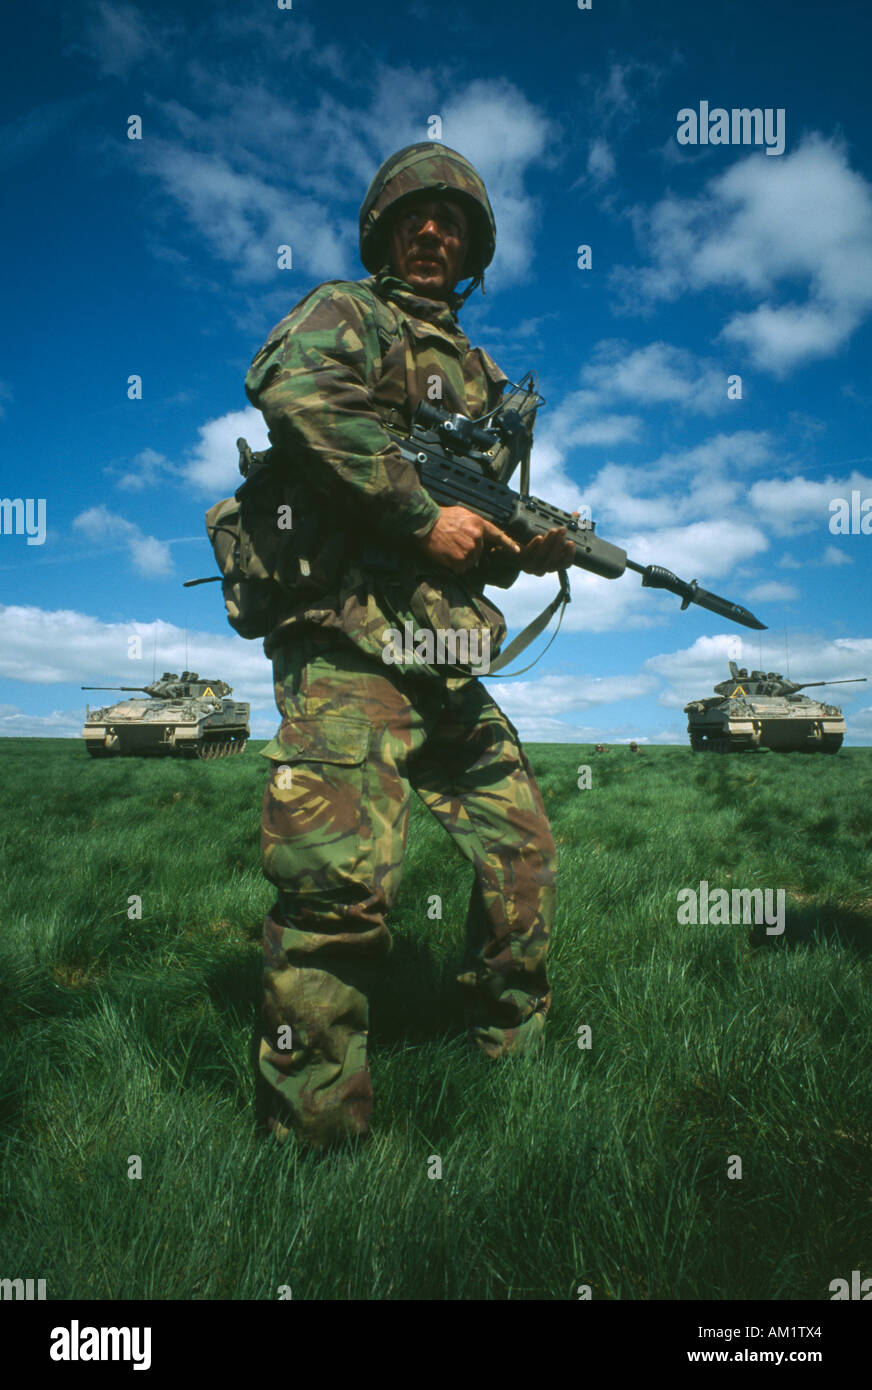 MILITÄRISCHE Ausbildung britische Armee Soldat Tarnung Ruf in einem Feld mit einer Pistole mit zwei Krieger Tanks hinter. Stockfoto